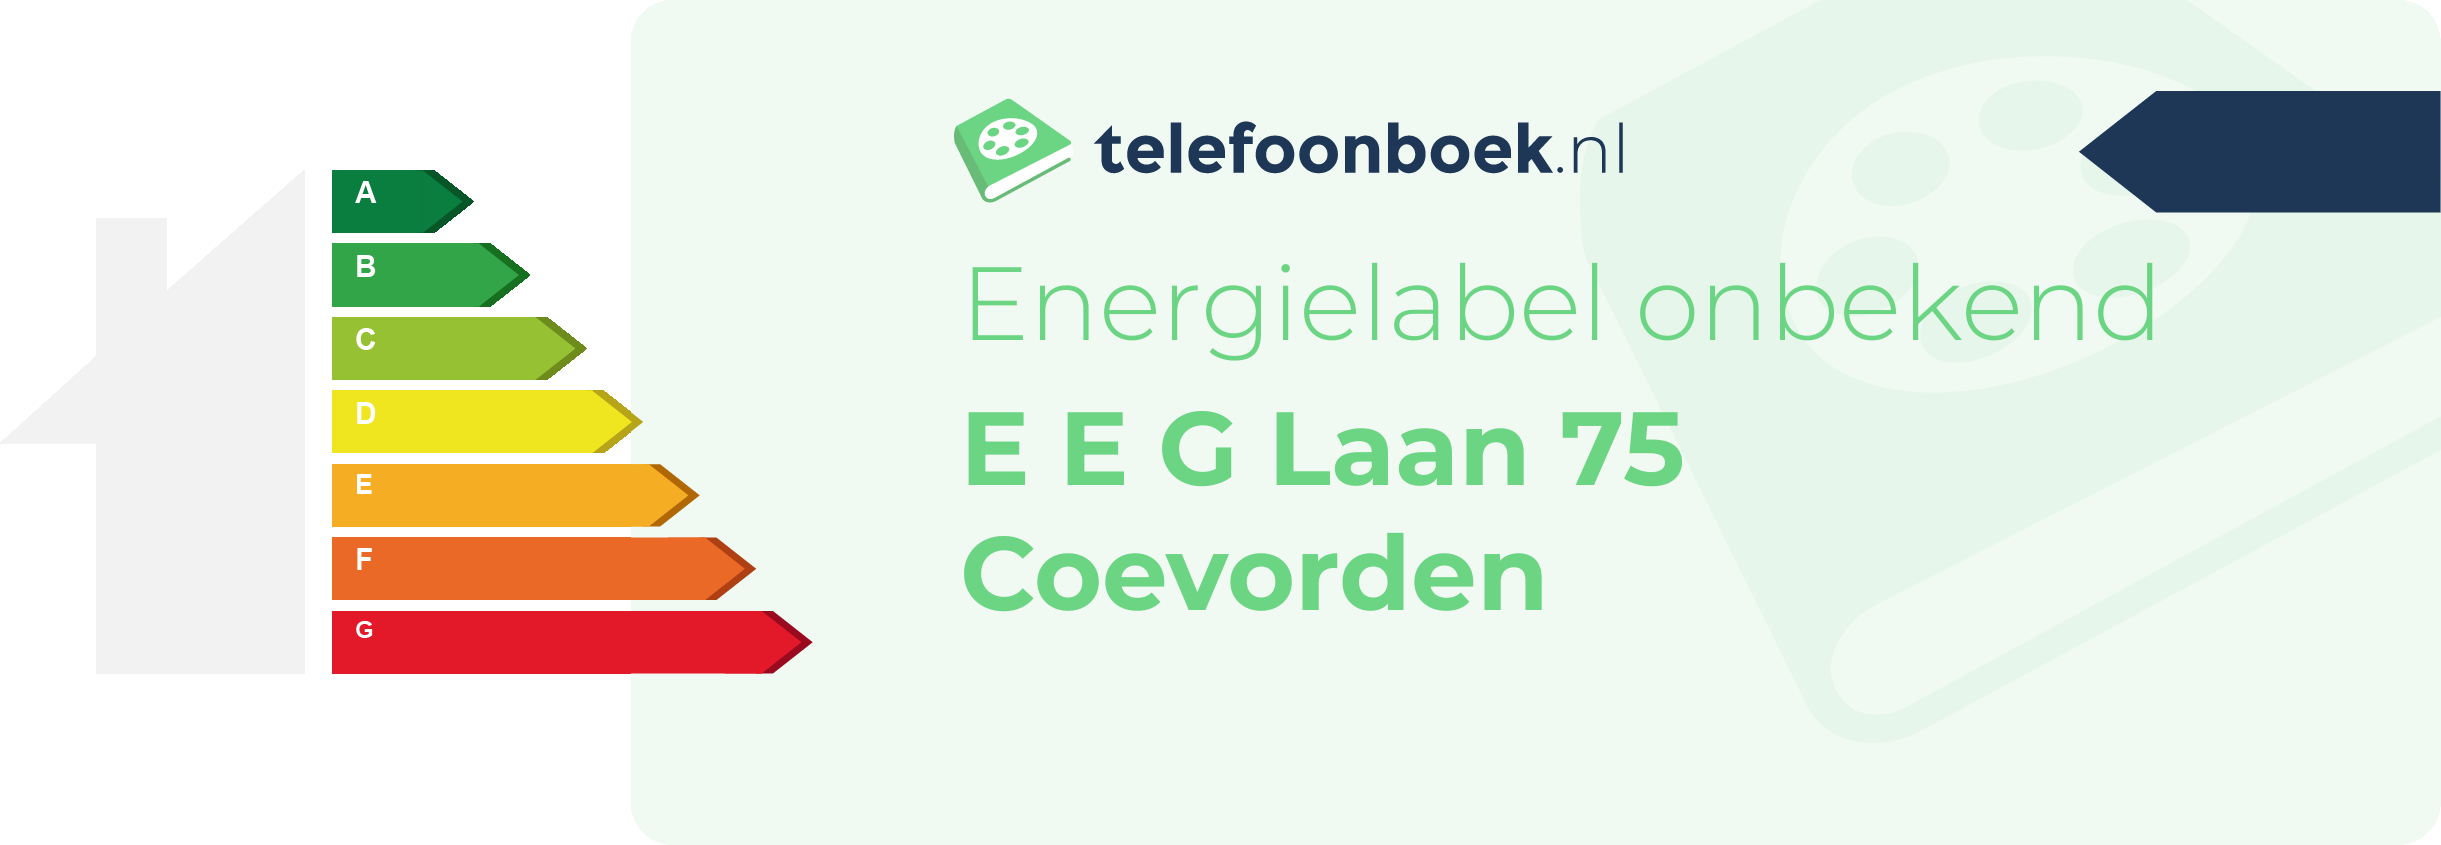 Energielabel E E G Laan 75 Coevorden